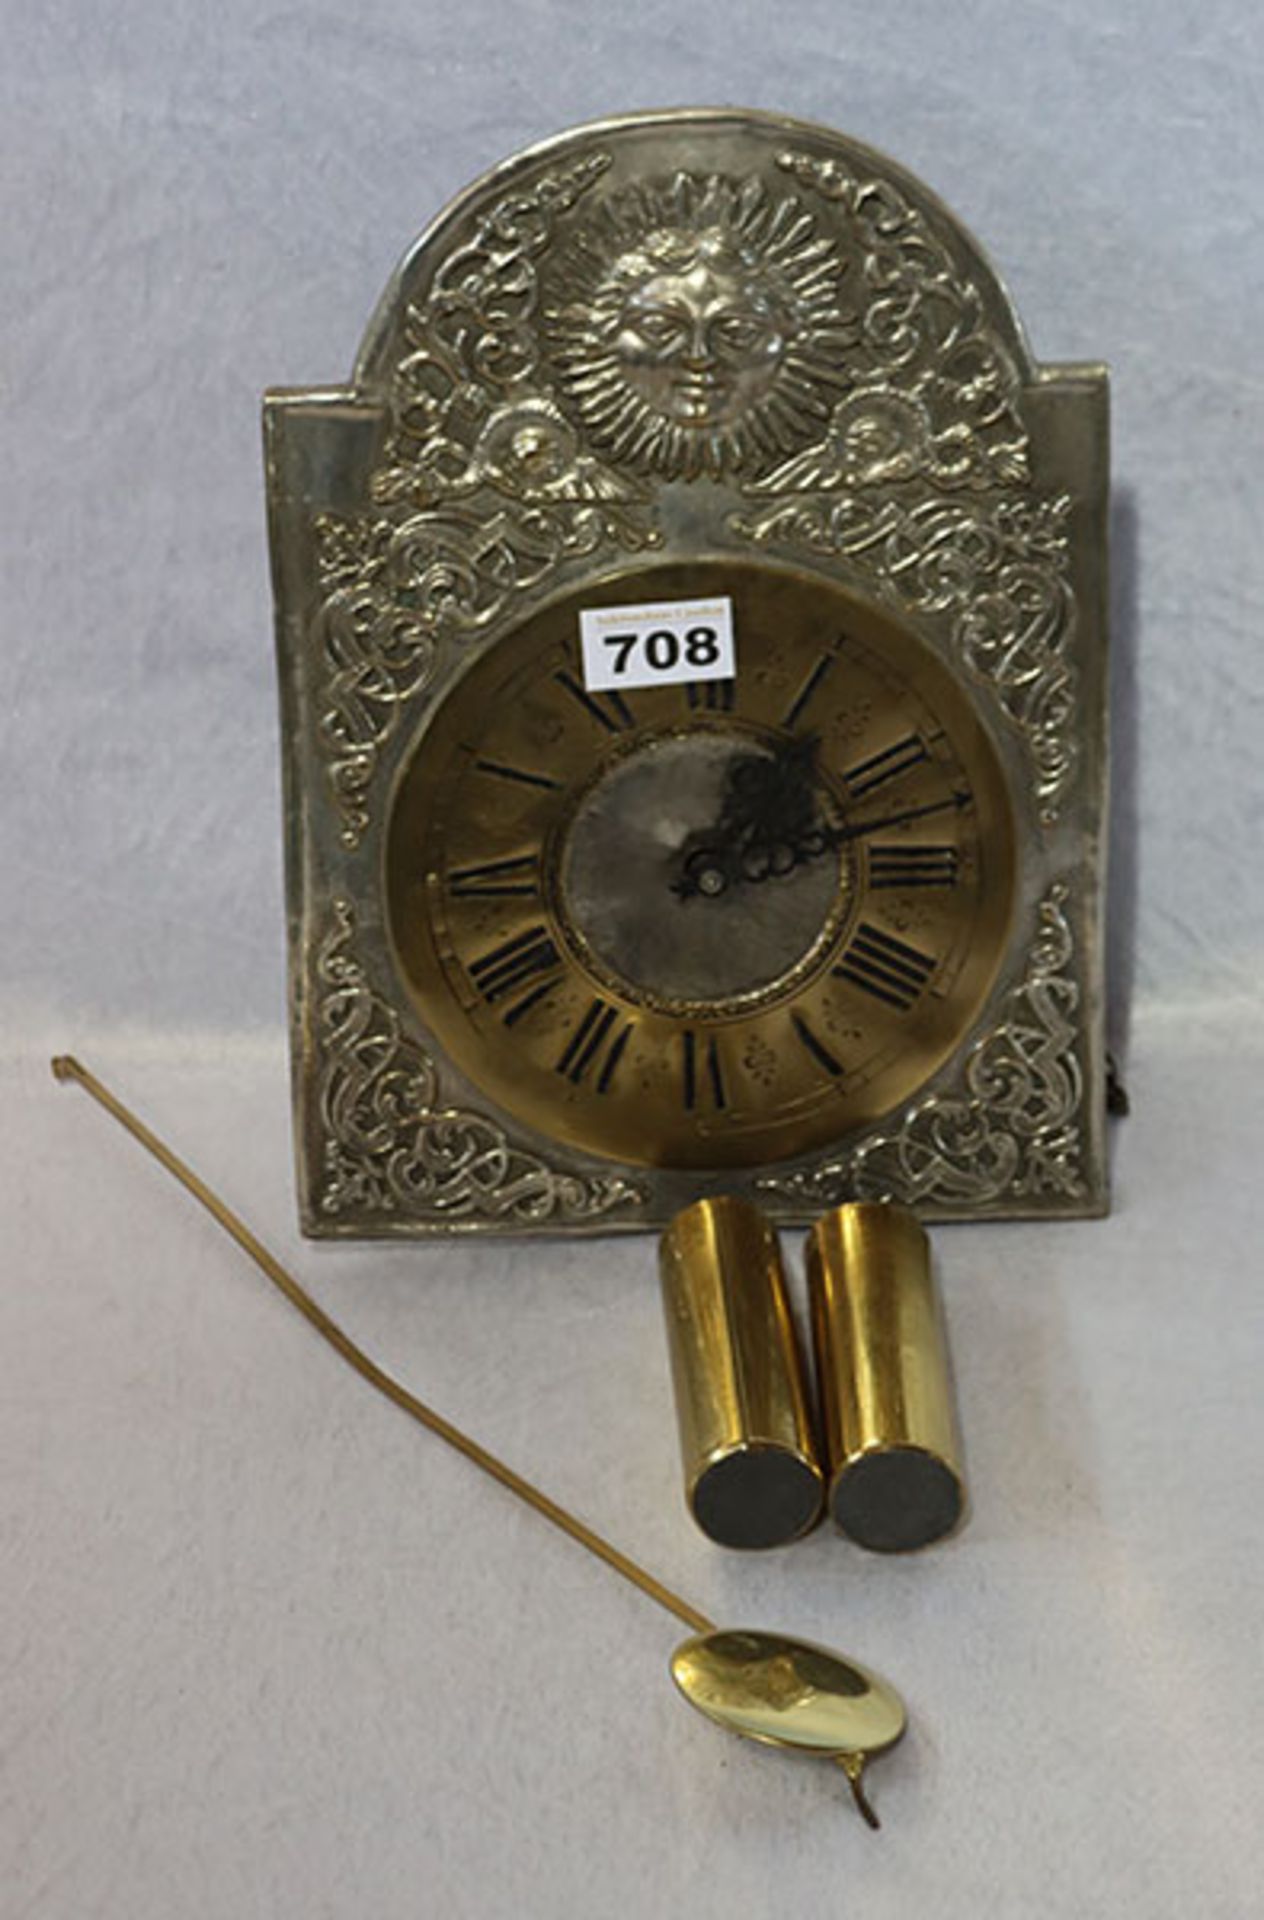 Metall Wanduhr mit Reliefdekor, mit Pendel und 2 Gewichten, H 30 cm, B 20 cm, Funktion nicht